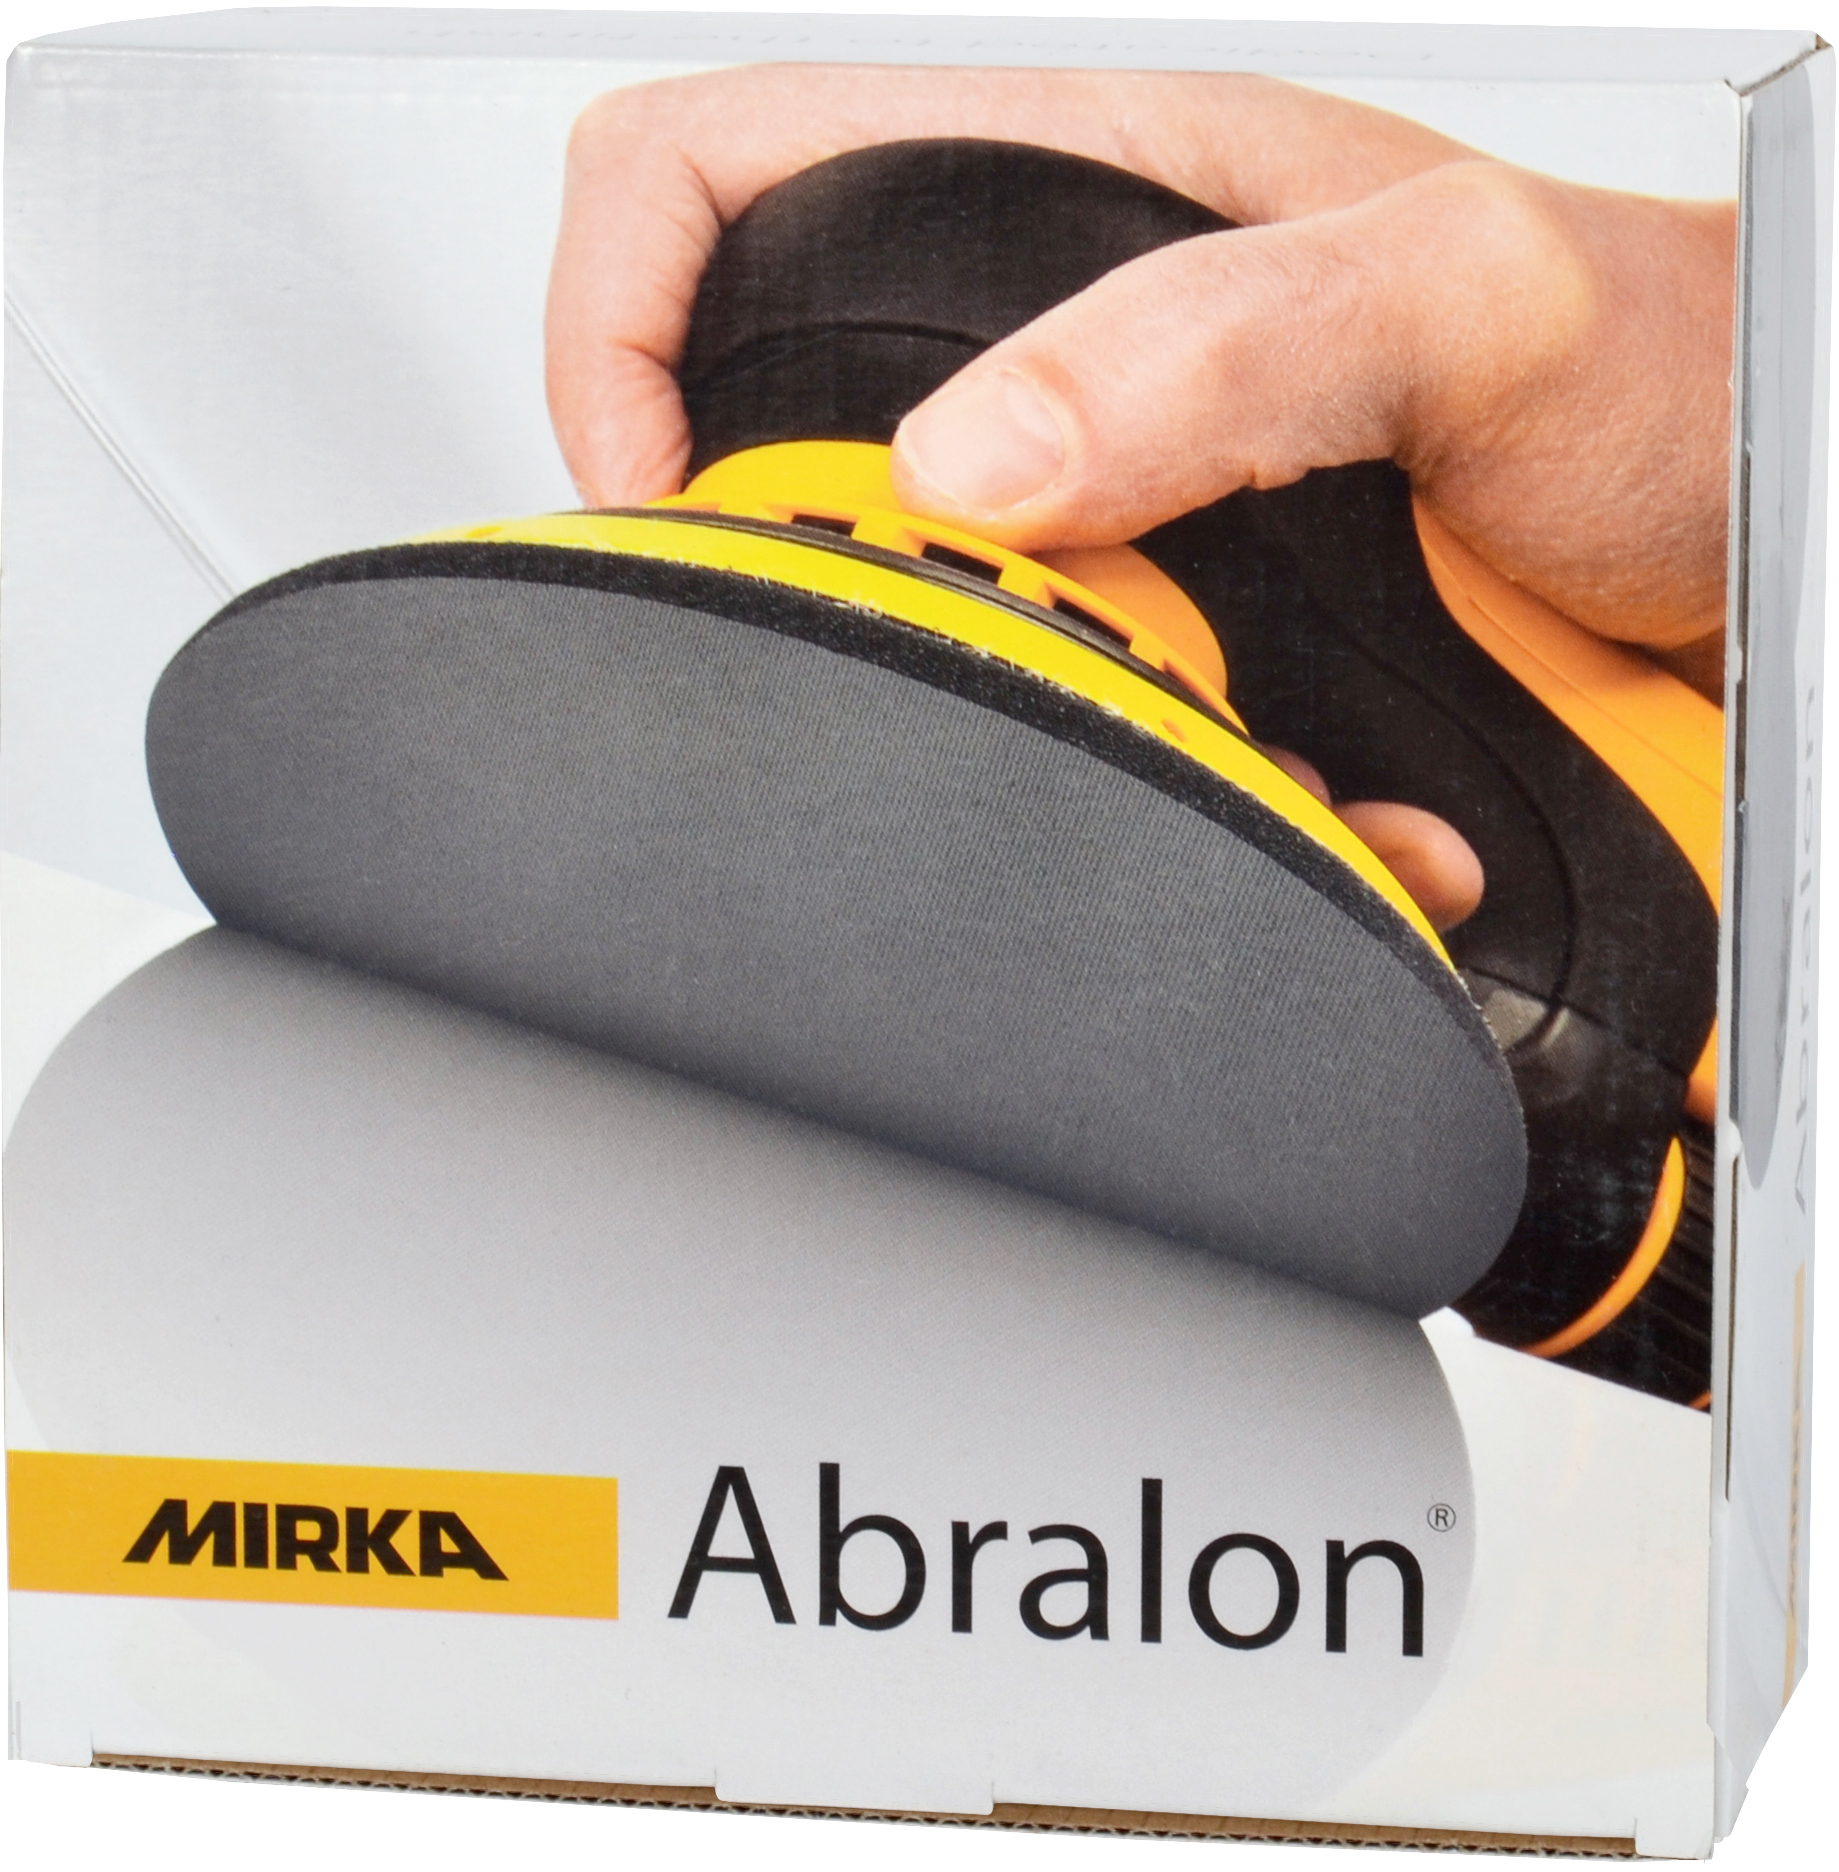 Mirka Abralon 3 Foam Polishing Grip Discs, 8A-203 Series –